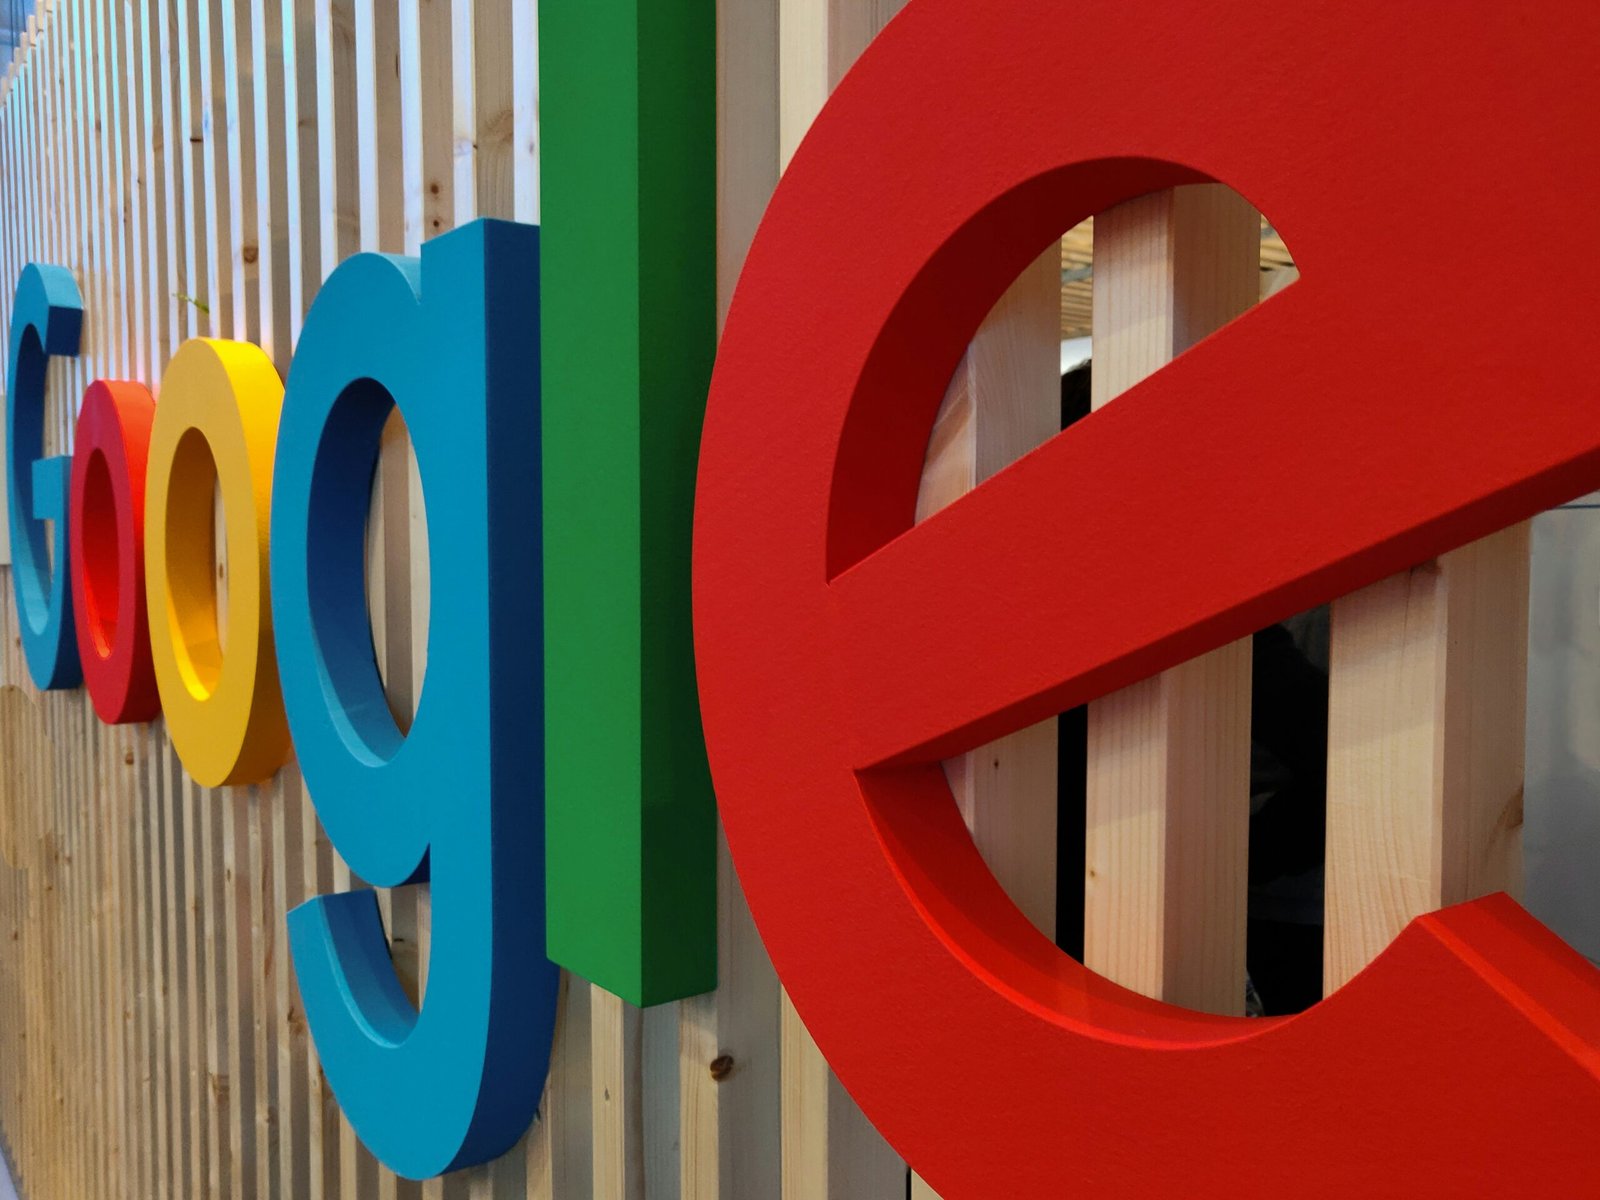 Google Layoffs 2024